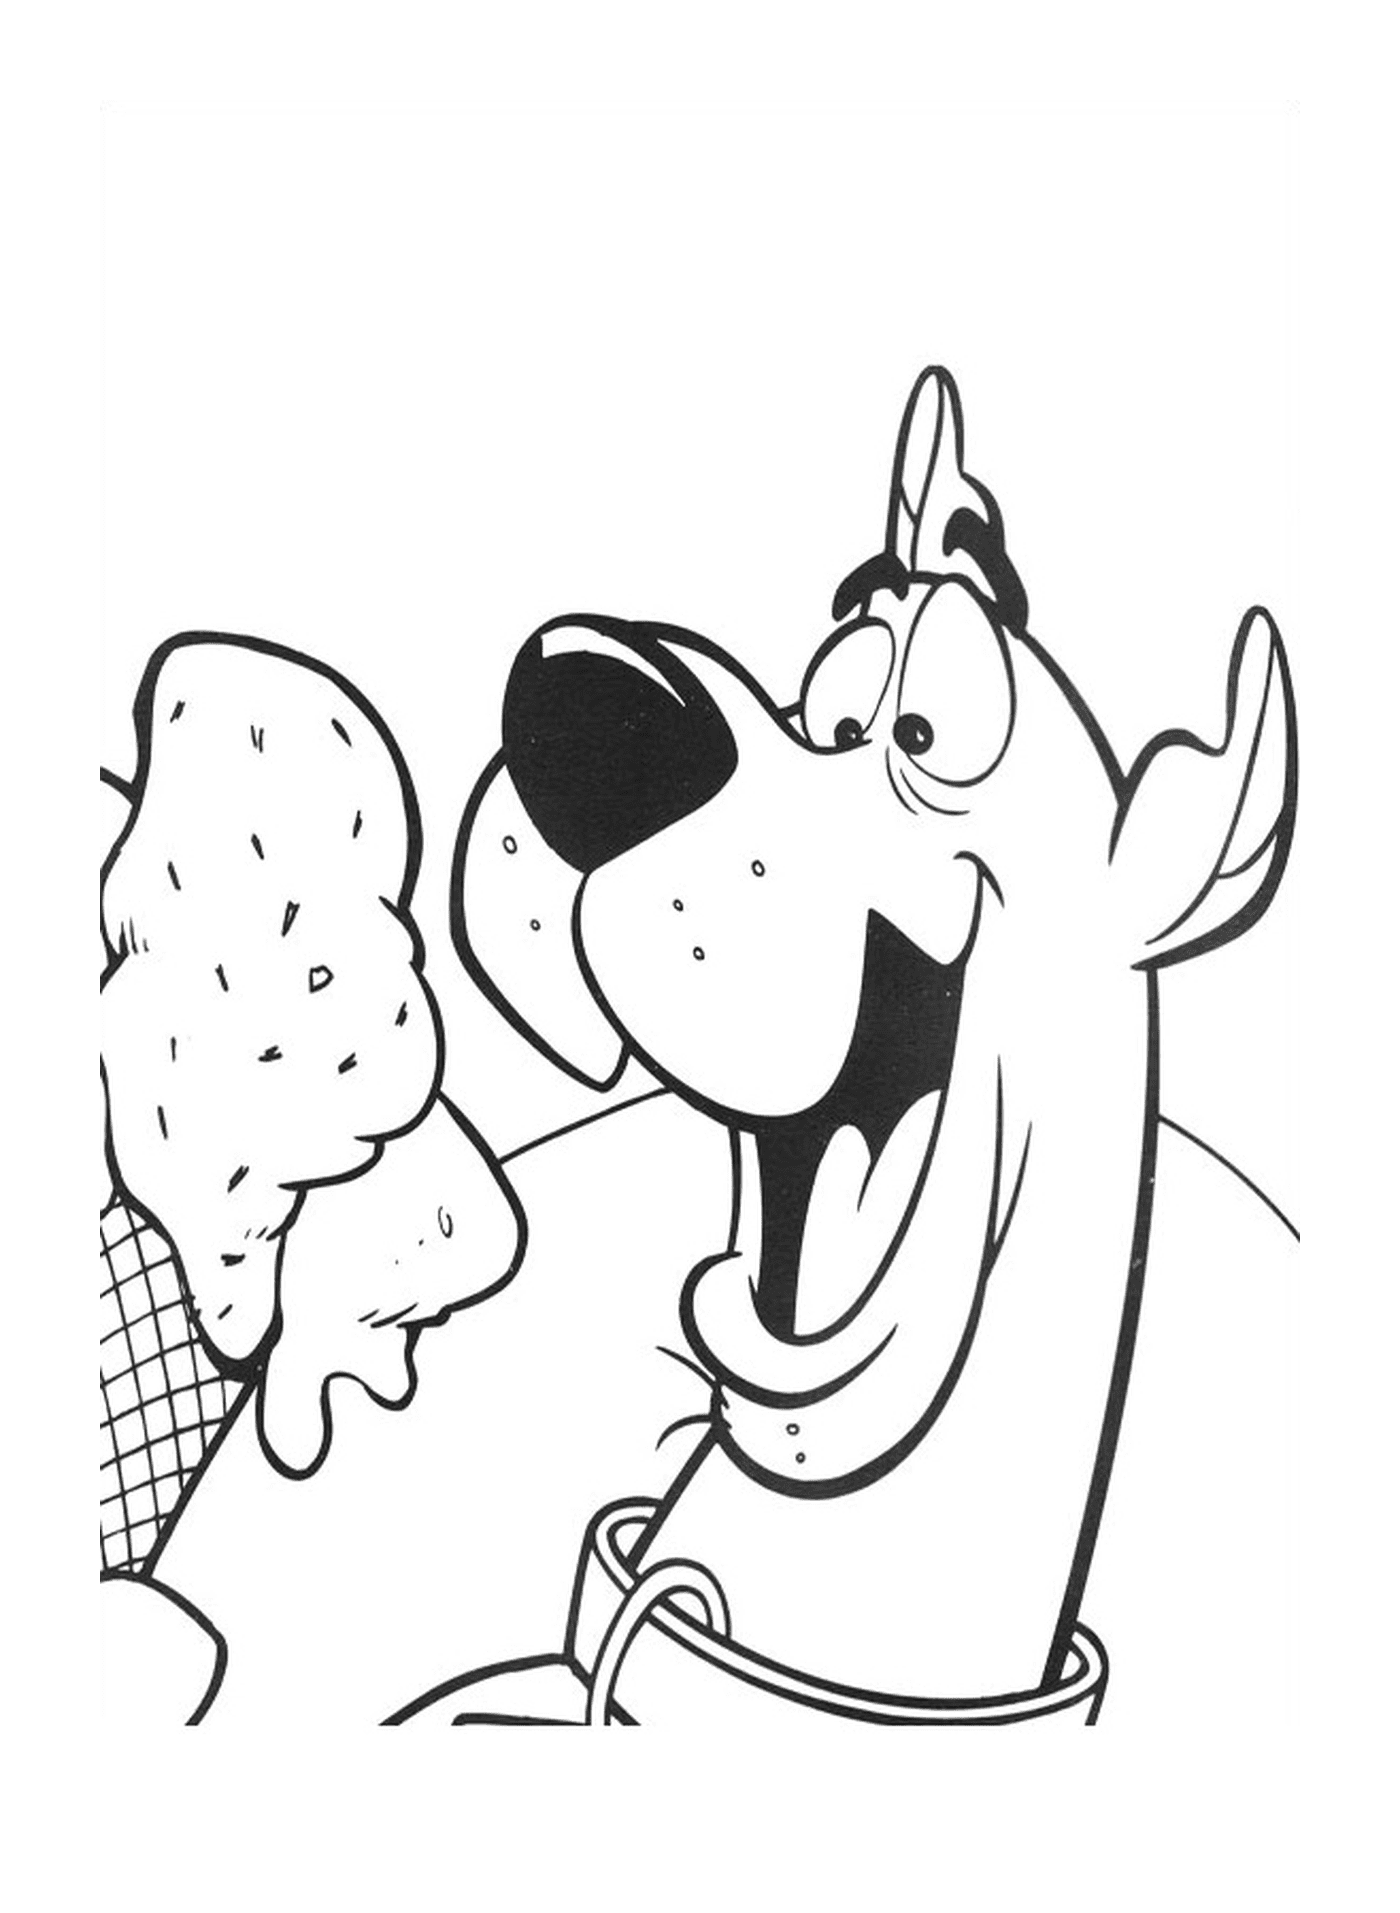  Un perro come helado 